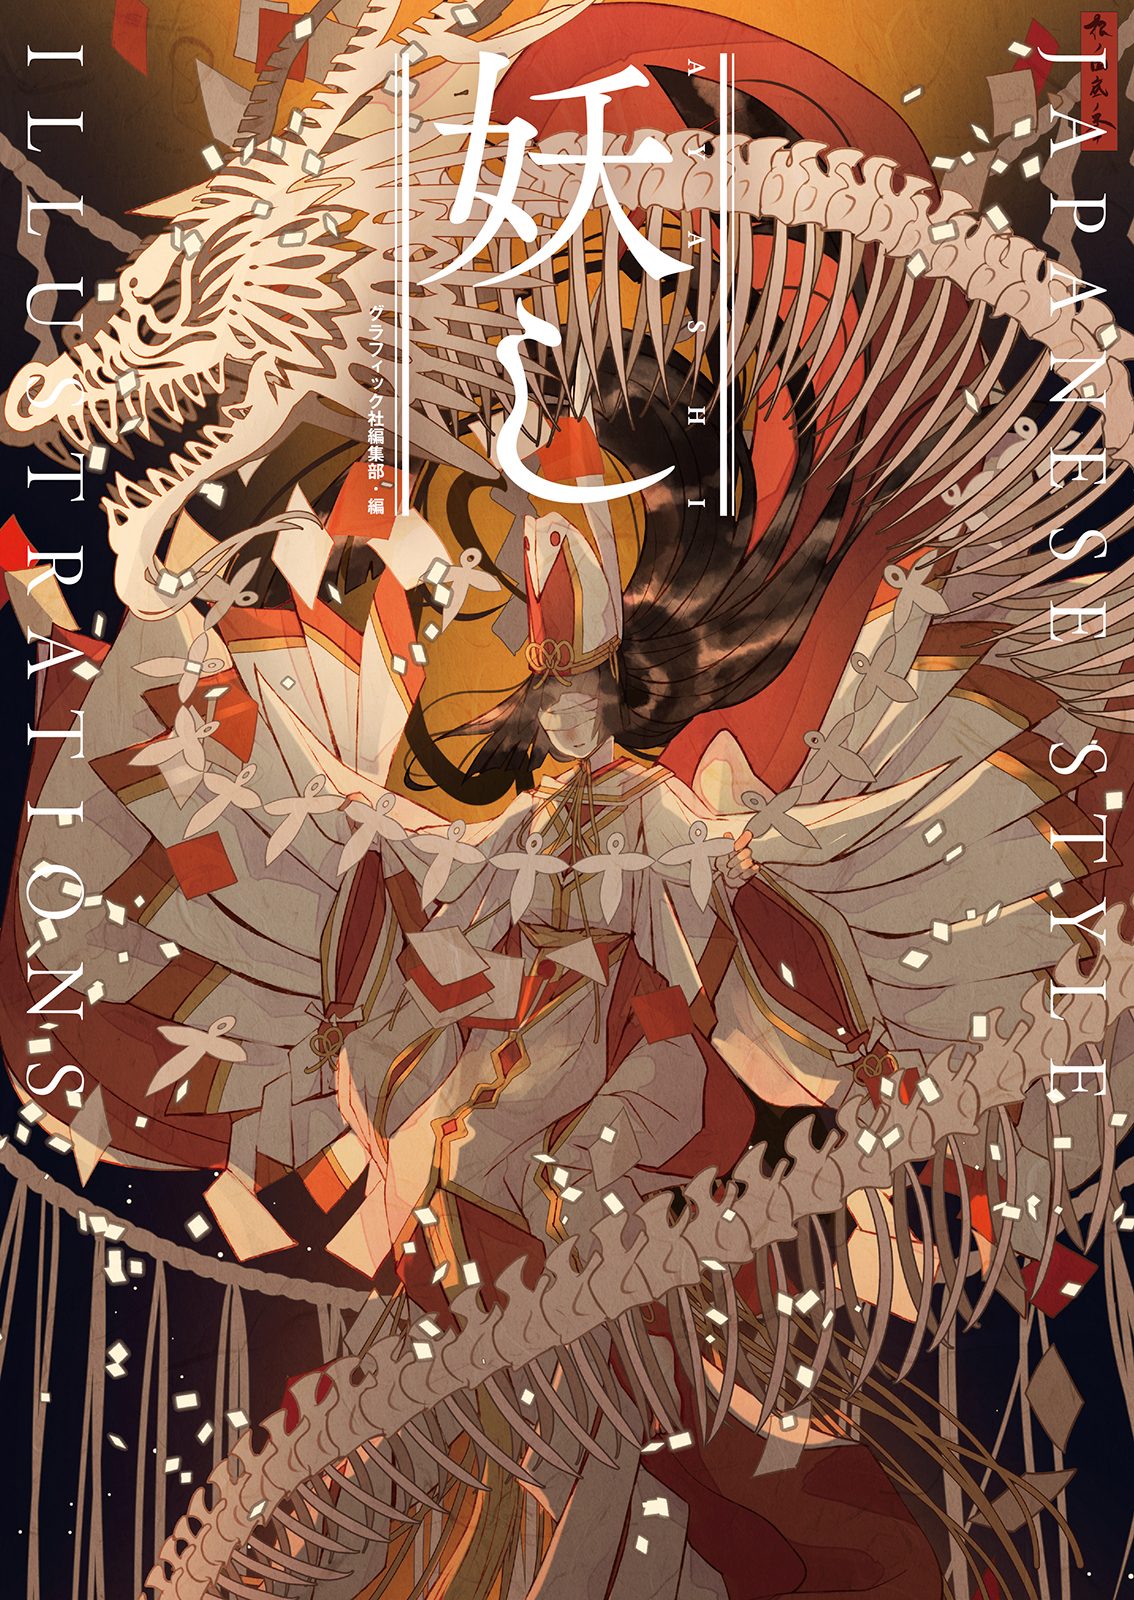 妖し をテーマに描いた和風イラストが満載 新進気鋭のイラストレーター12名によるアンソロジーイラスト集2月発売 株式会社グラフィック社のプレスリリース